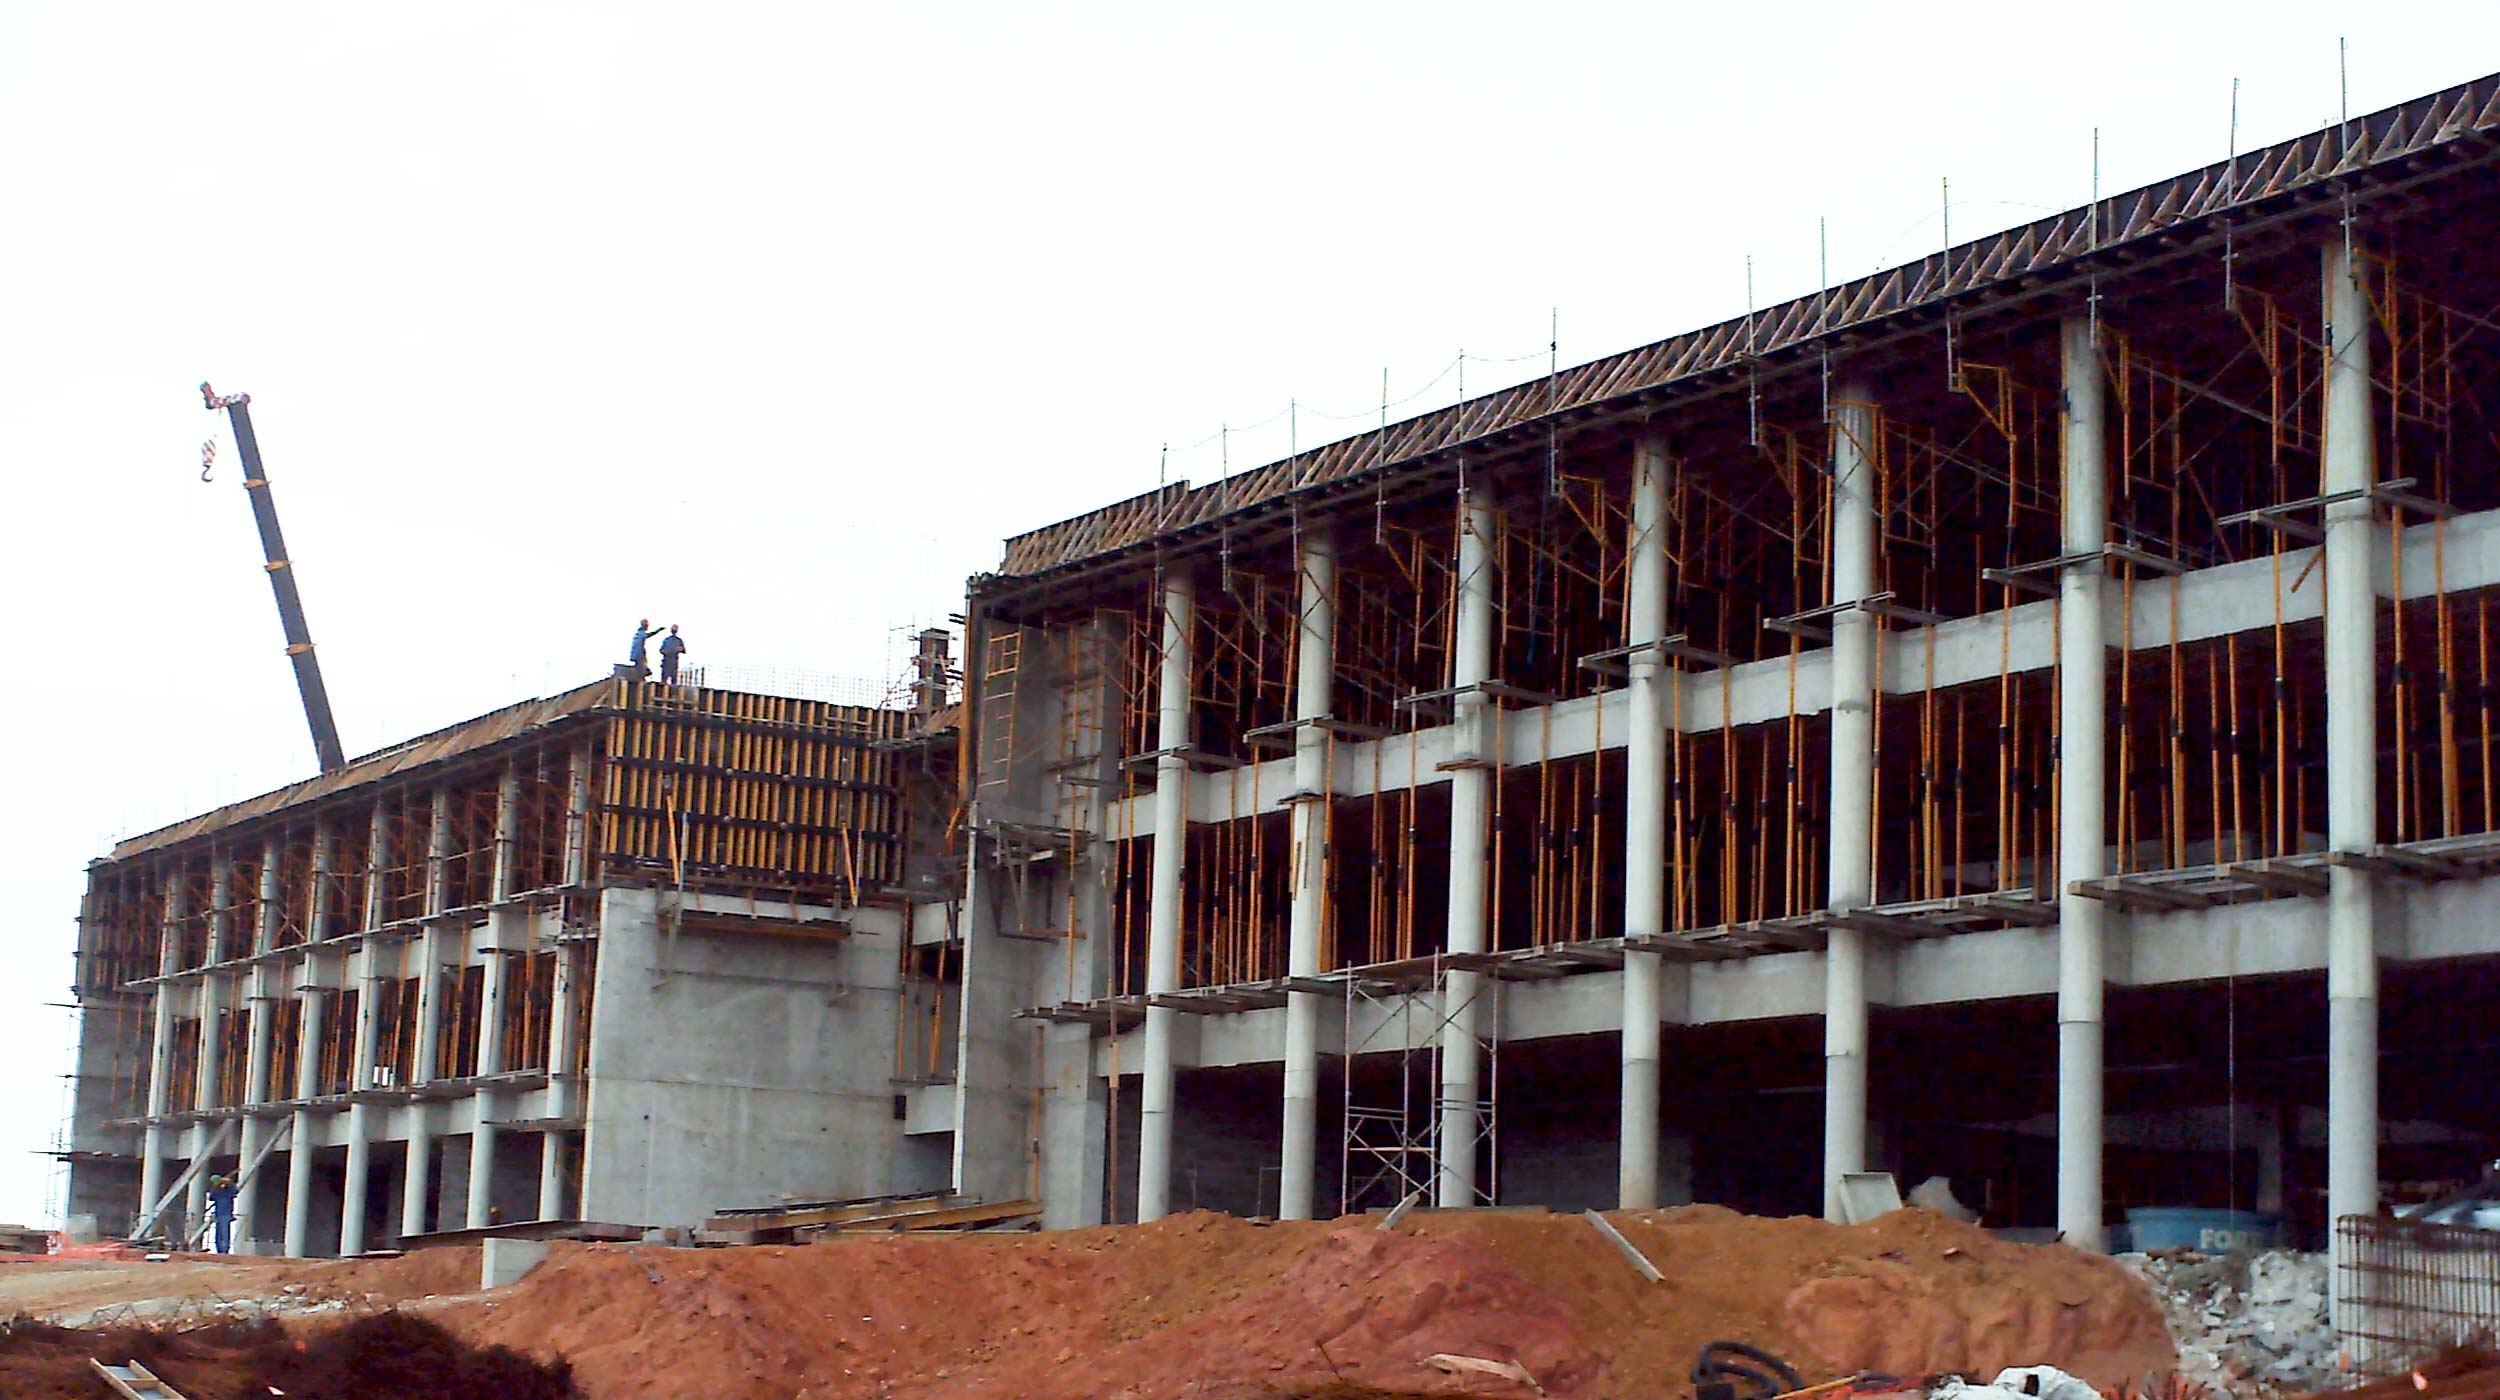 A nova sede das instalações industriais da Schlumberger no Brasil destaca-se por sua imponente estrutura de 2.500 m² e paredes de 16 m de altura em concreto aparente.